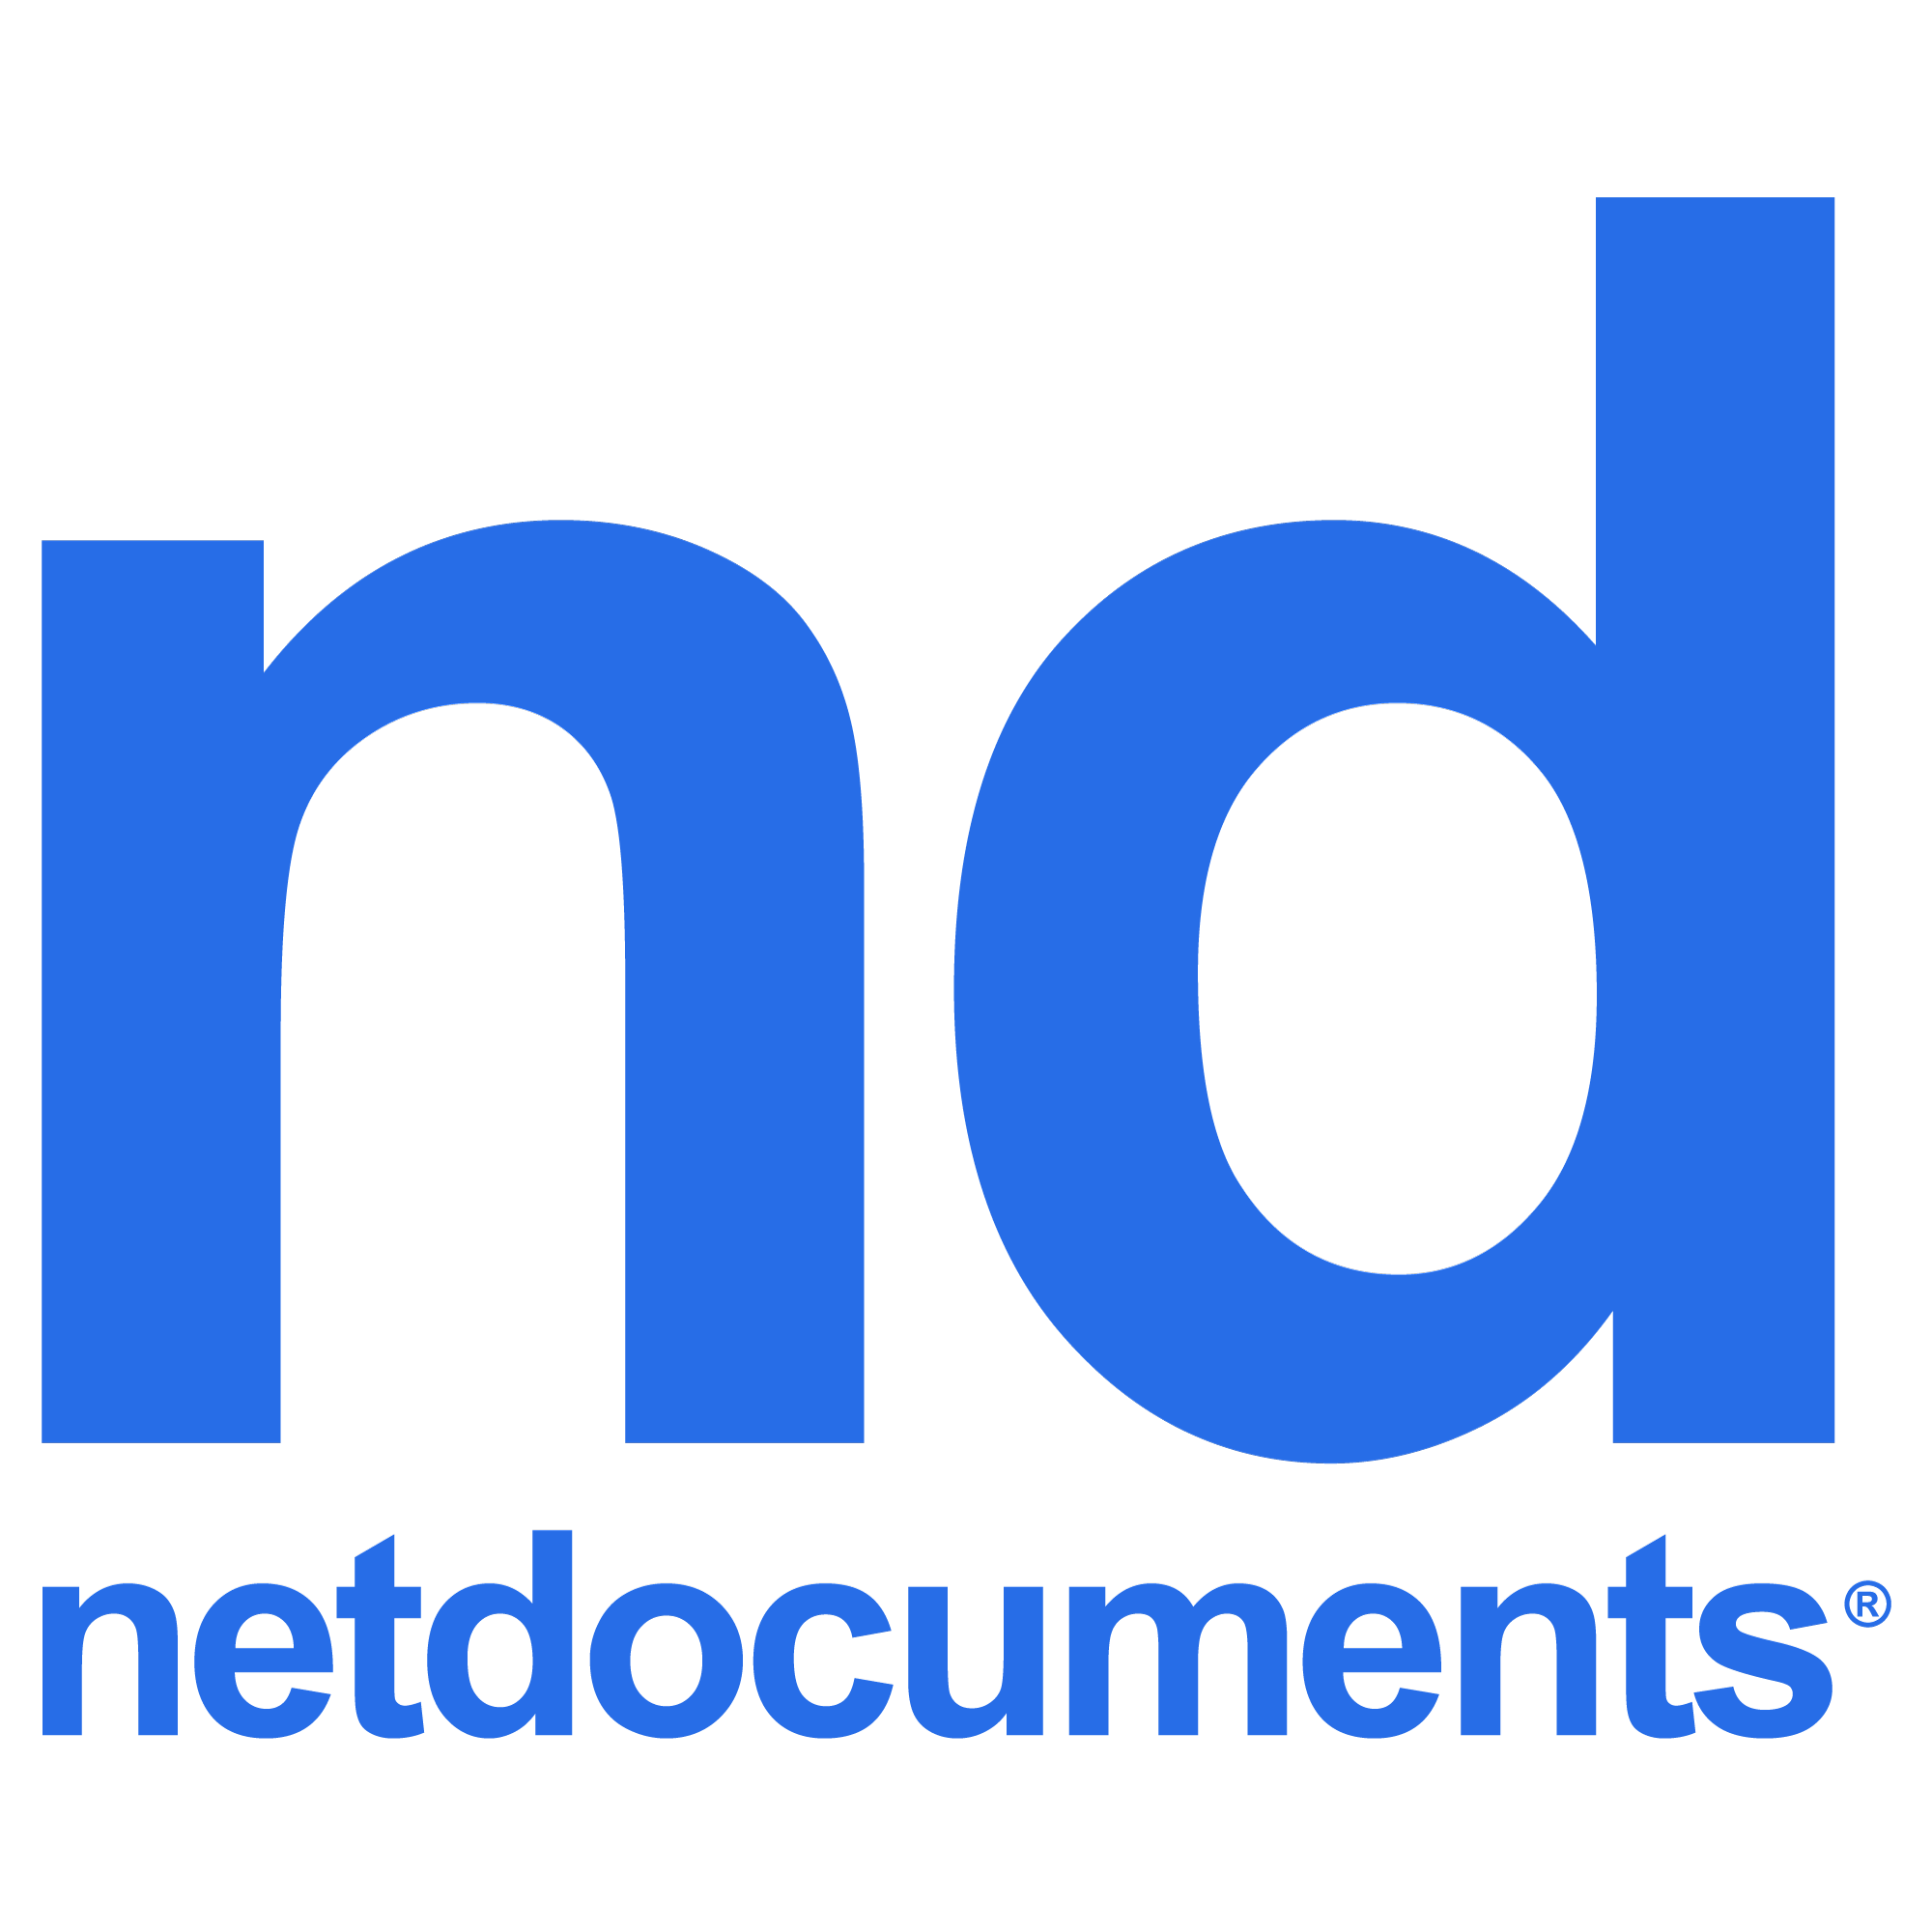 netdocuments download